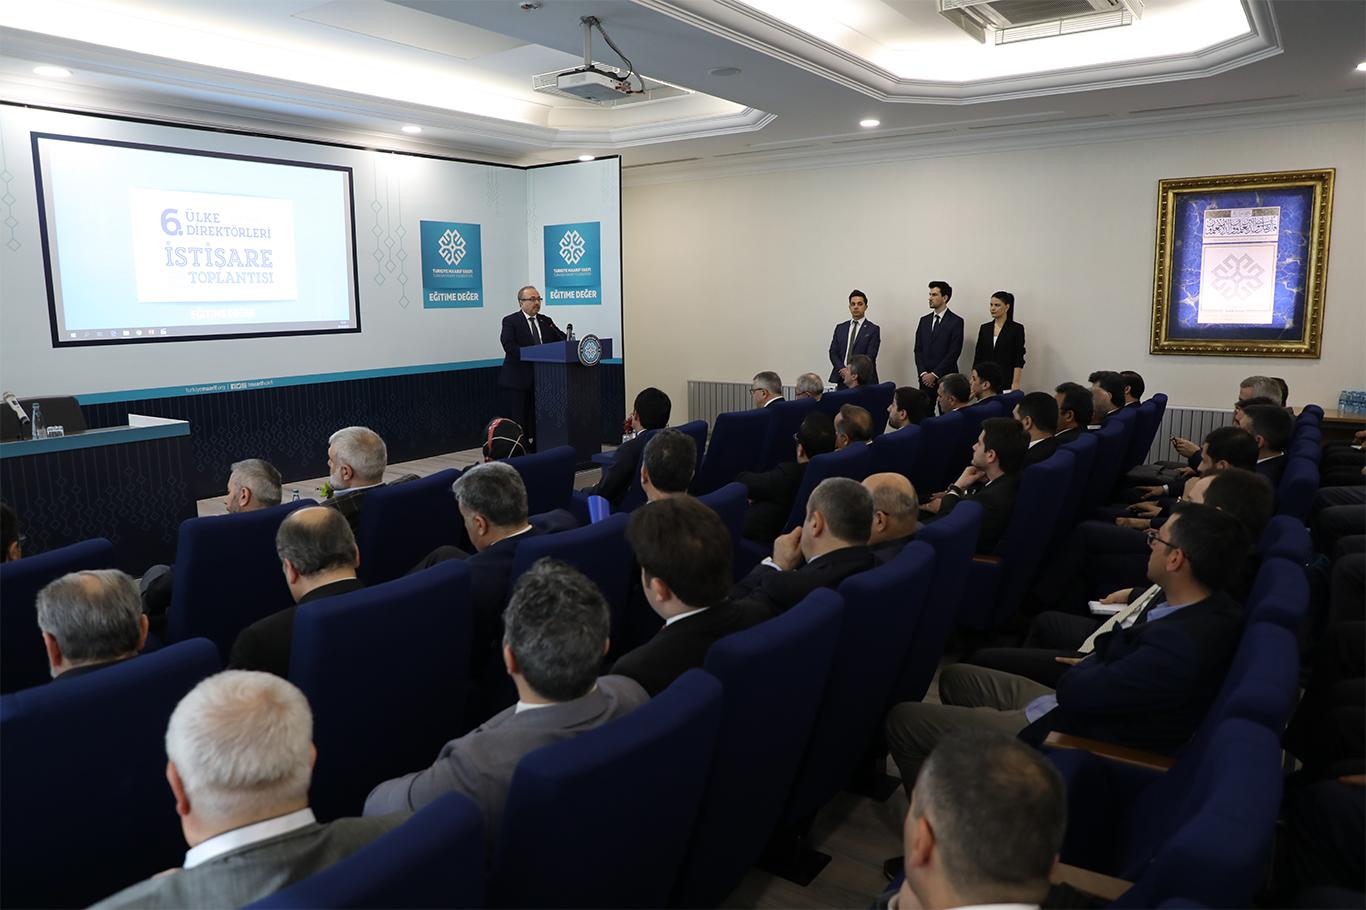 Türkiye Maarif Vakfı “6. Ülke Direktörleri İstişare Toplantısı” başladı